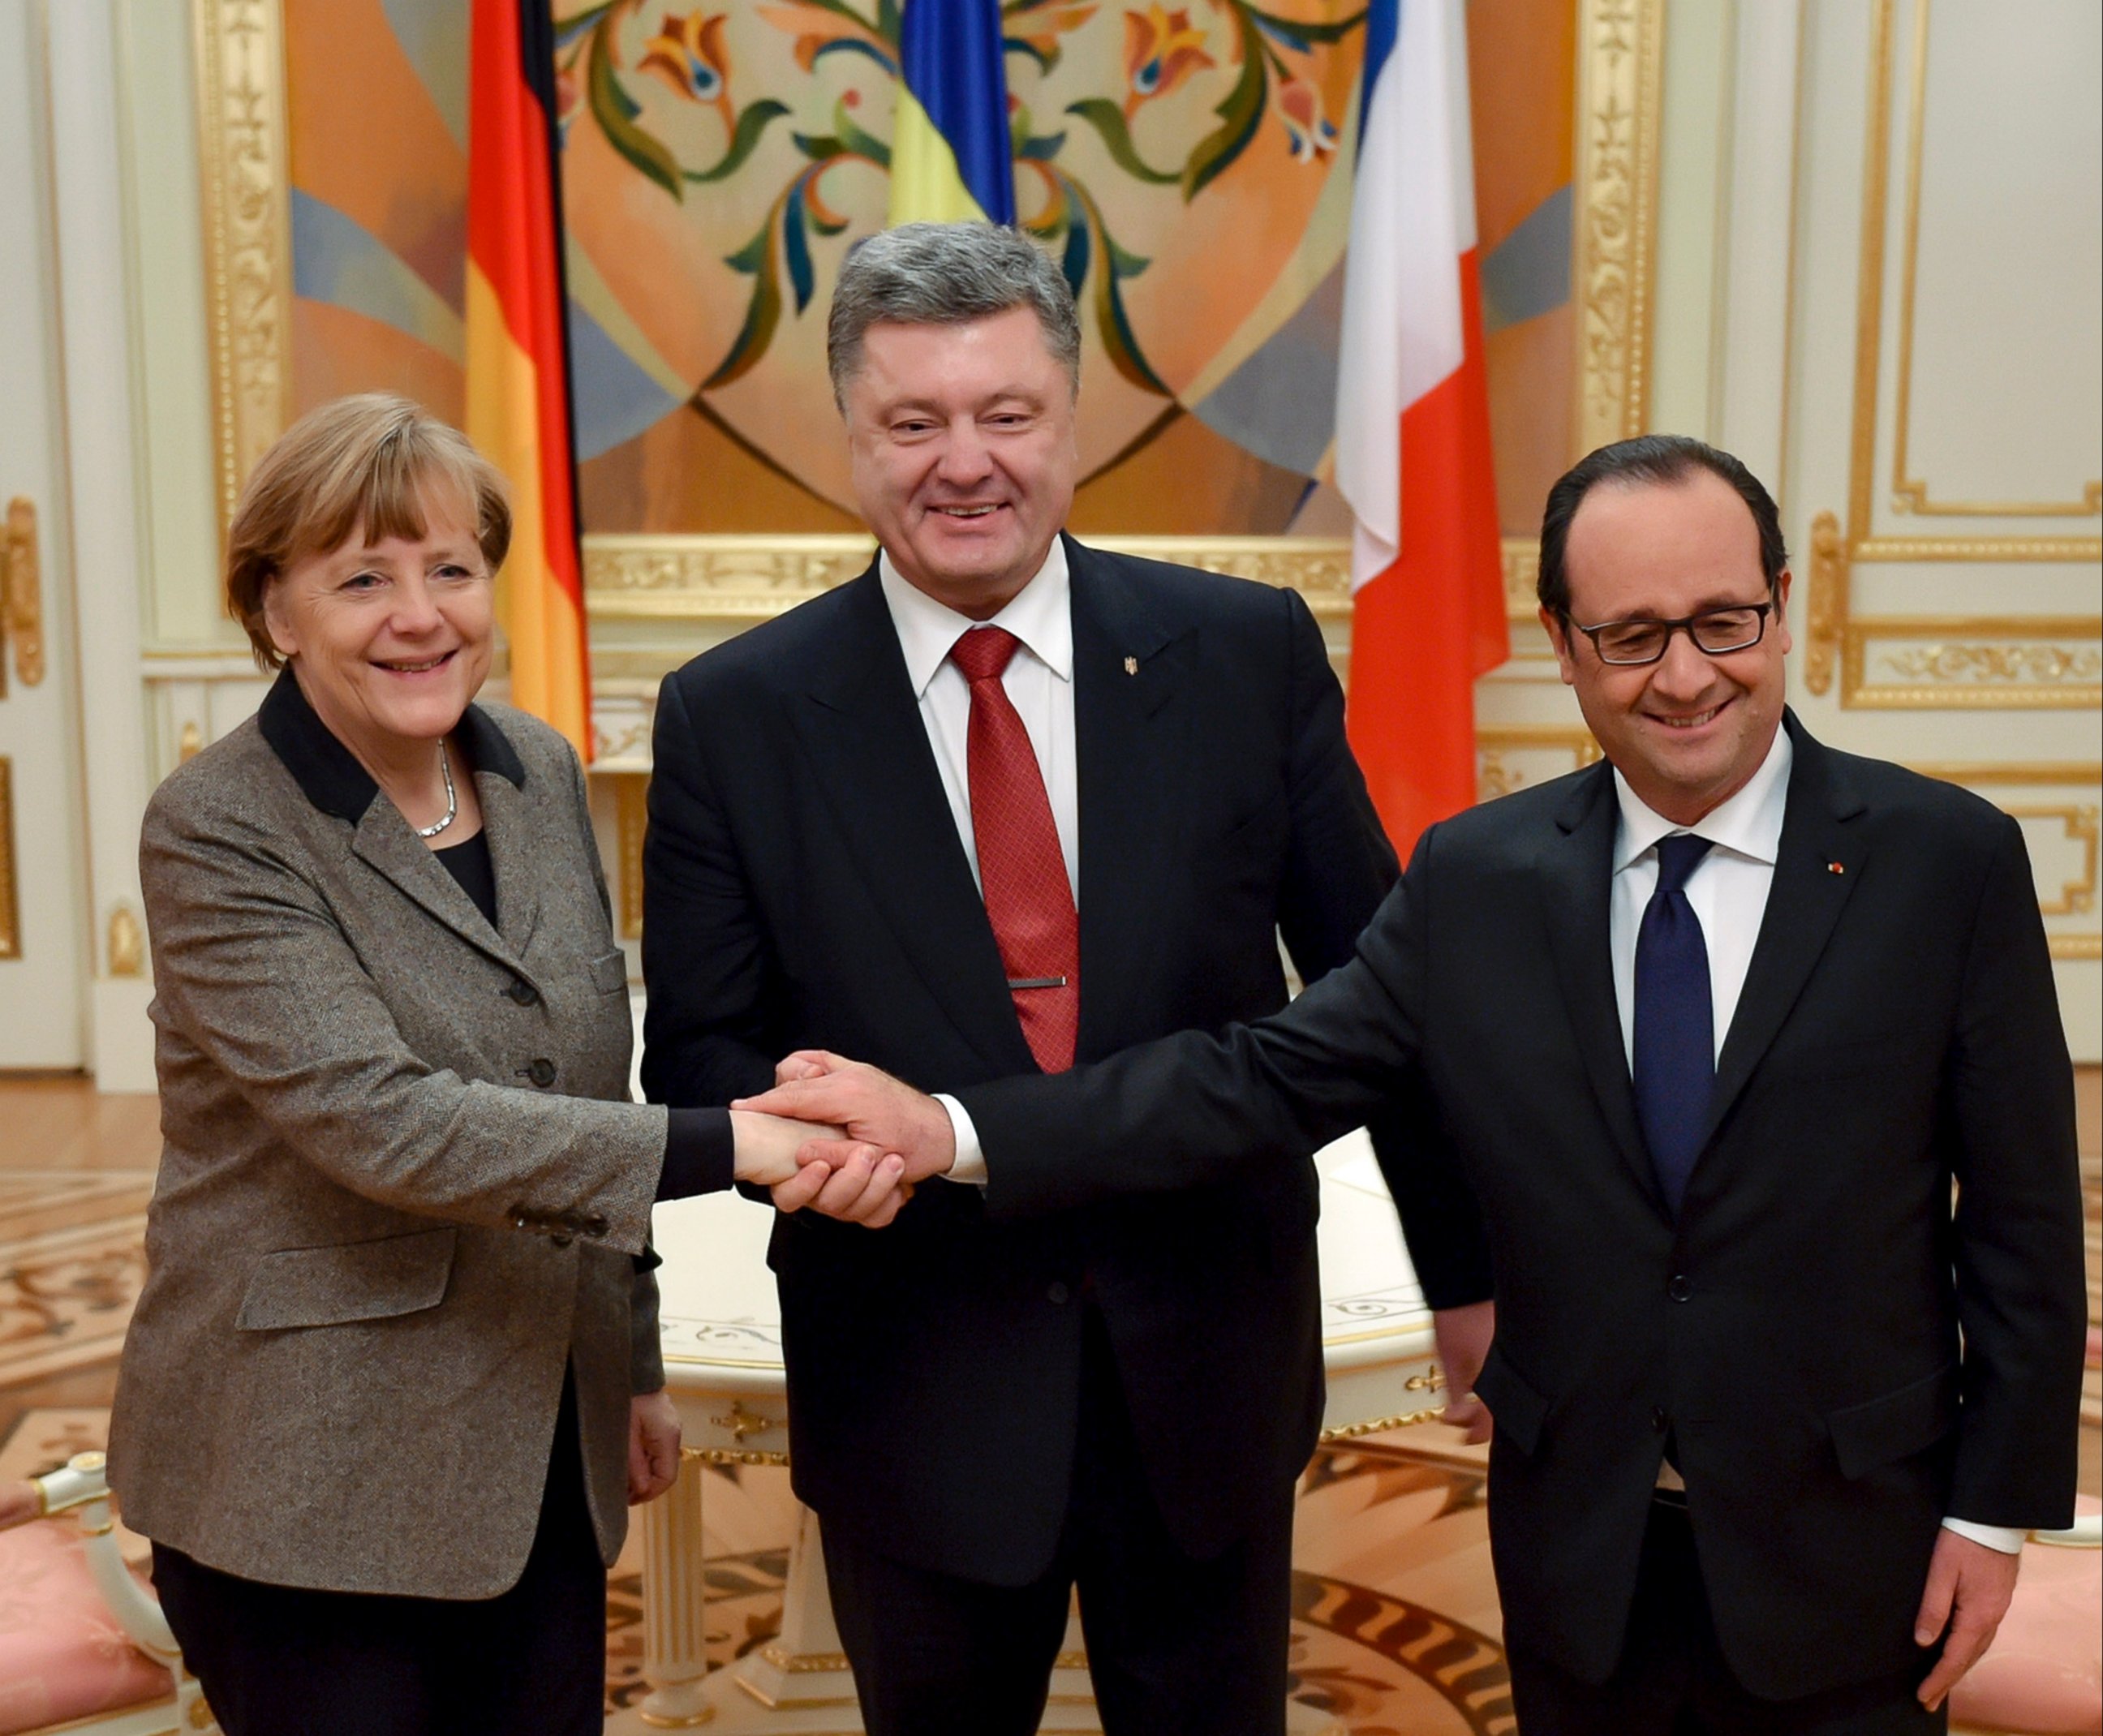 PHOTO: Ukrainian President Petro Poroshenko, center, French President Francois Hollande, right, and German Chancellor Angela Merkel shake hands during their meeting in Kiev, Ukraine, Feb. 5, 2015.
